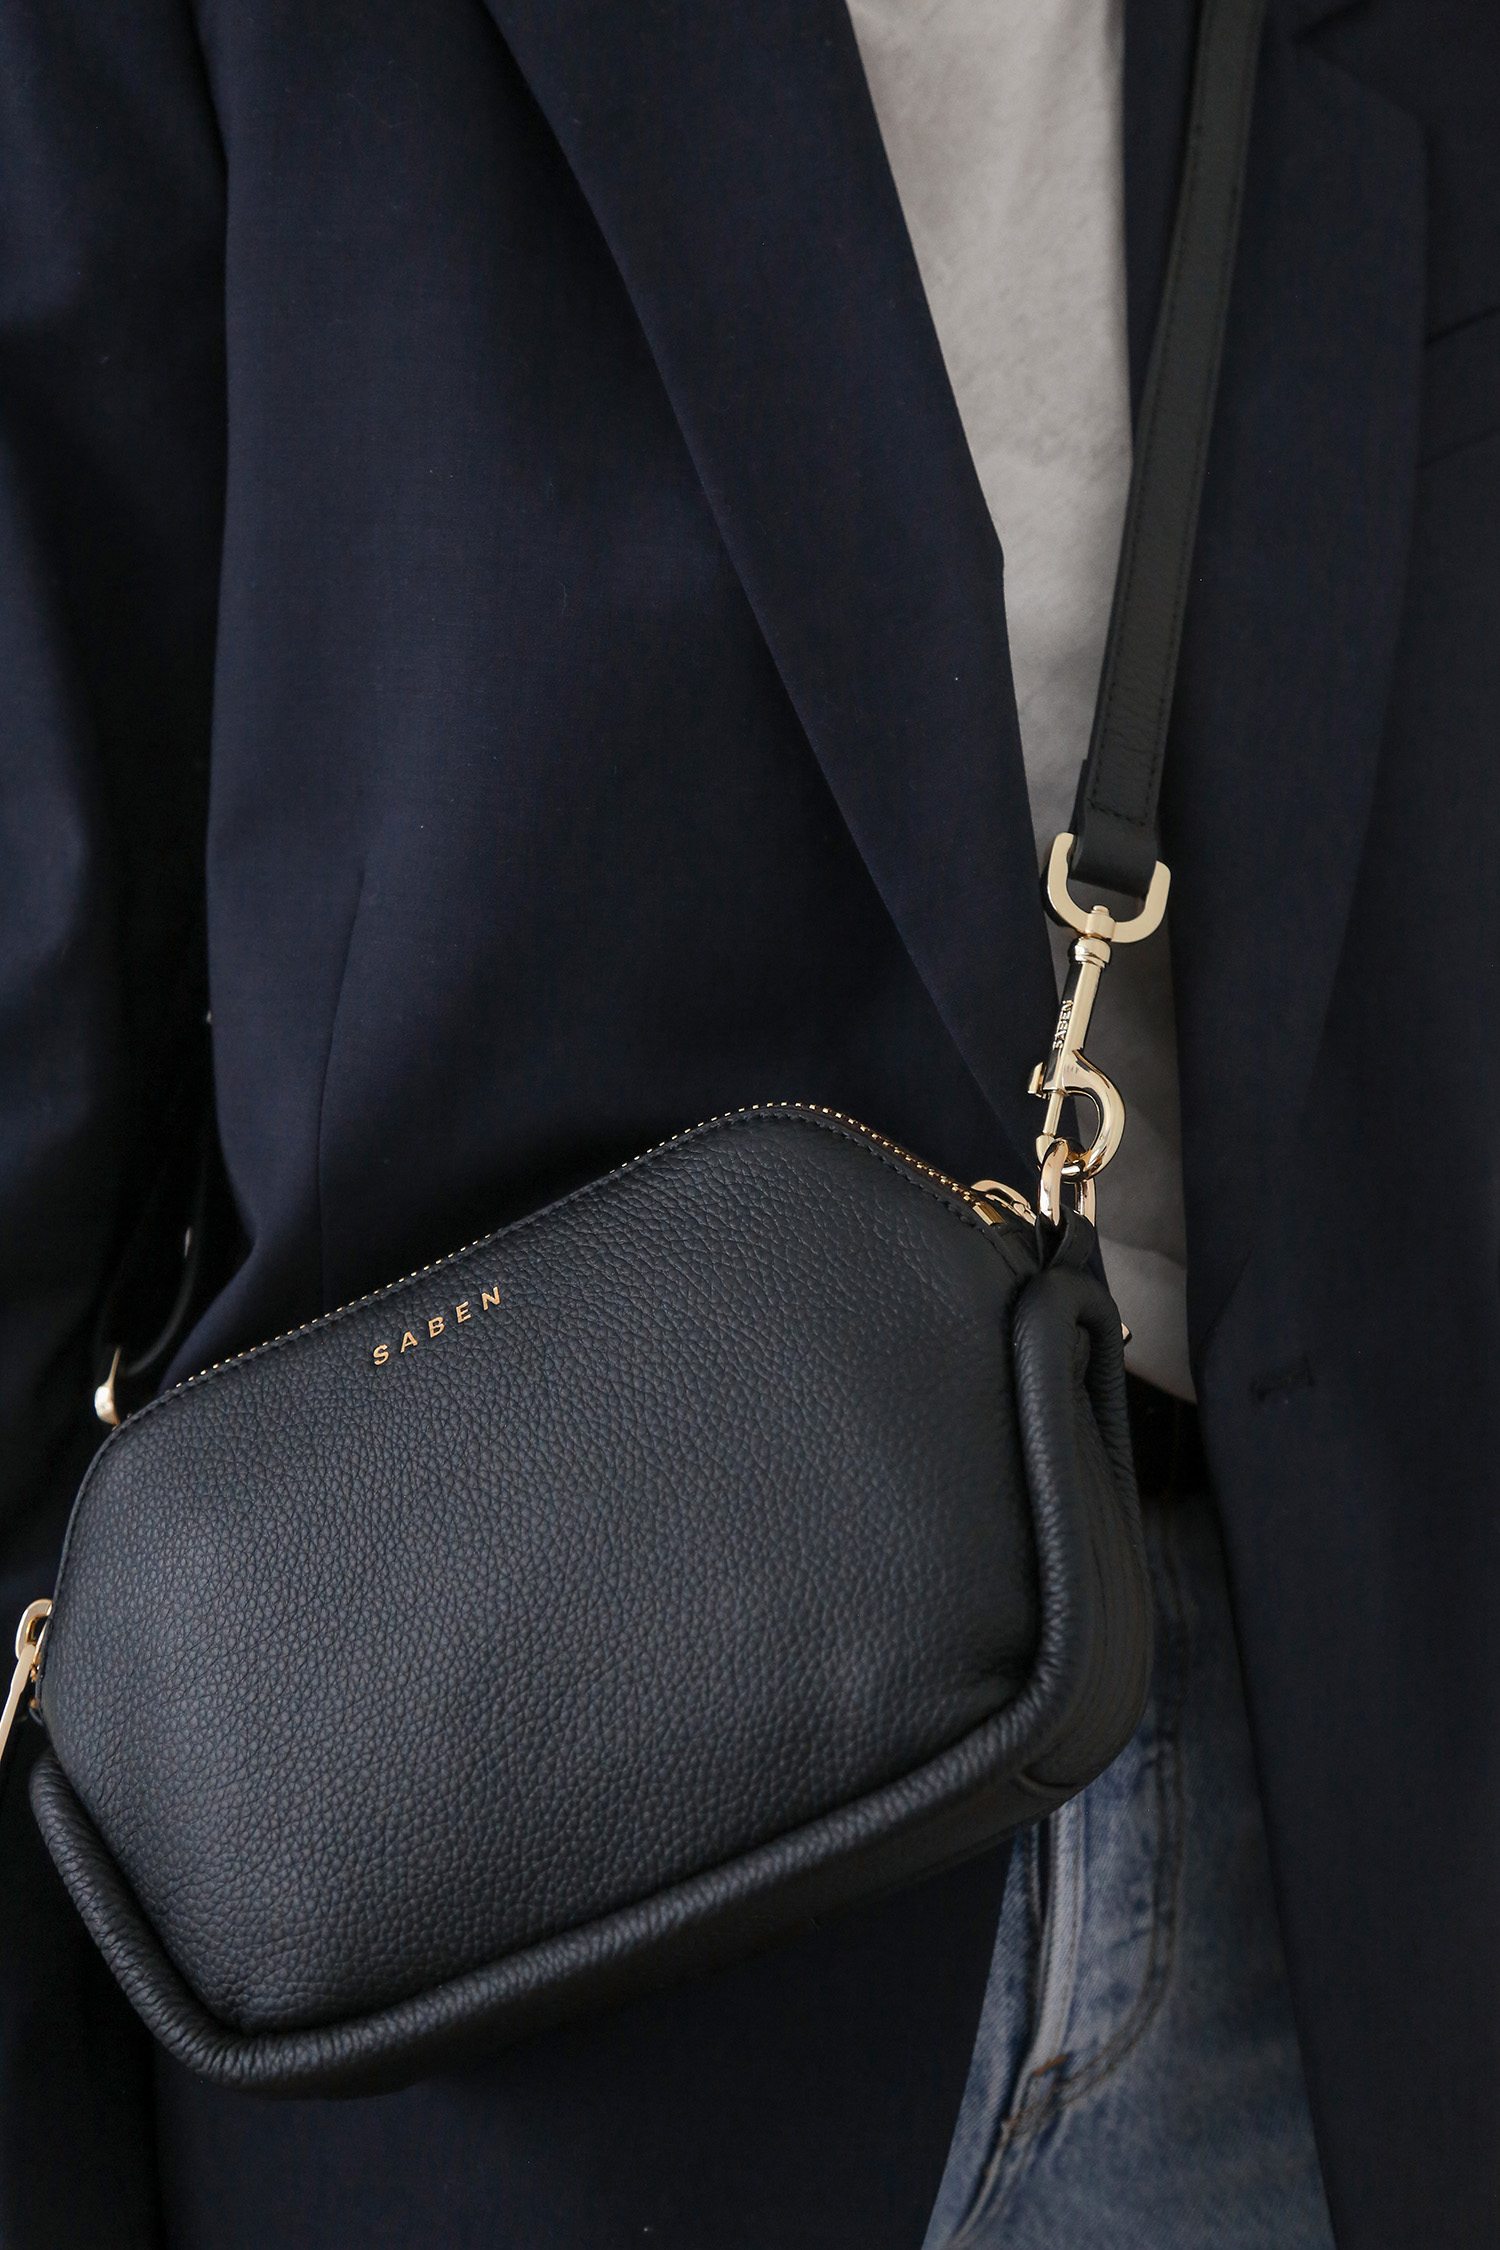 Parisian chic style blazer tee and jeans with crossbody handbag